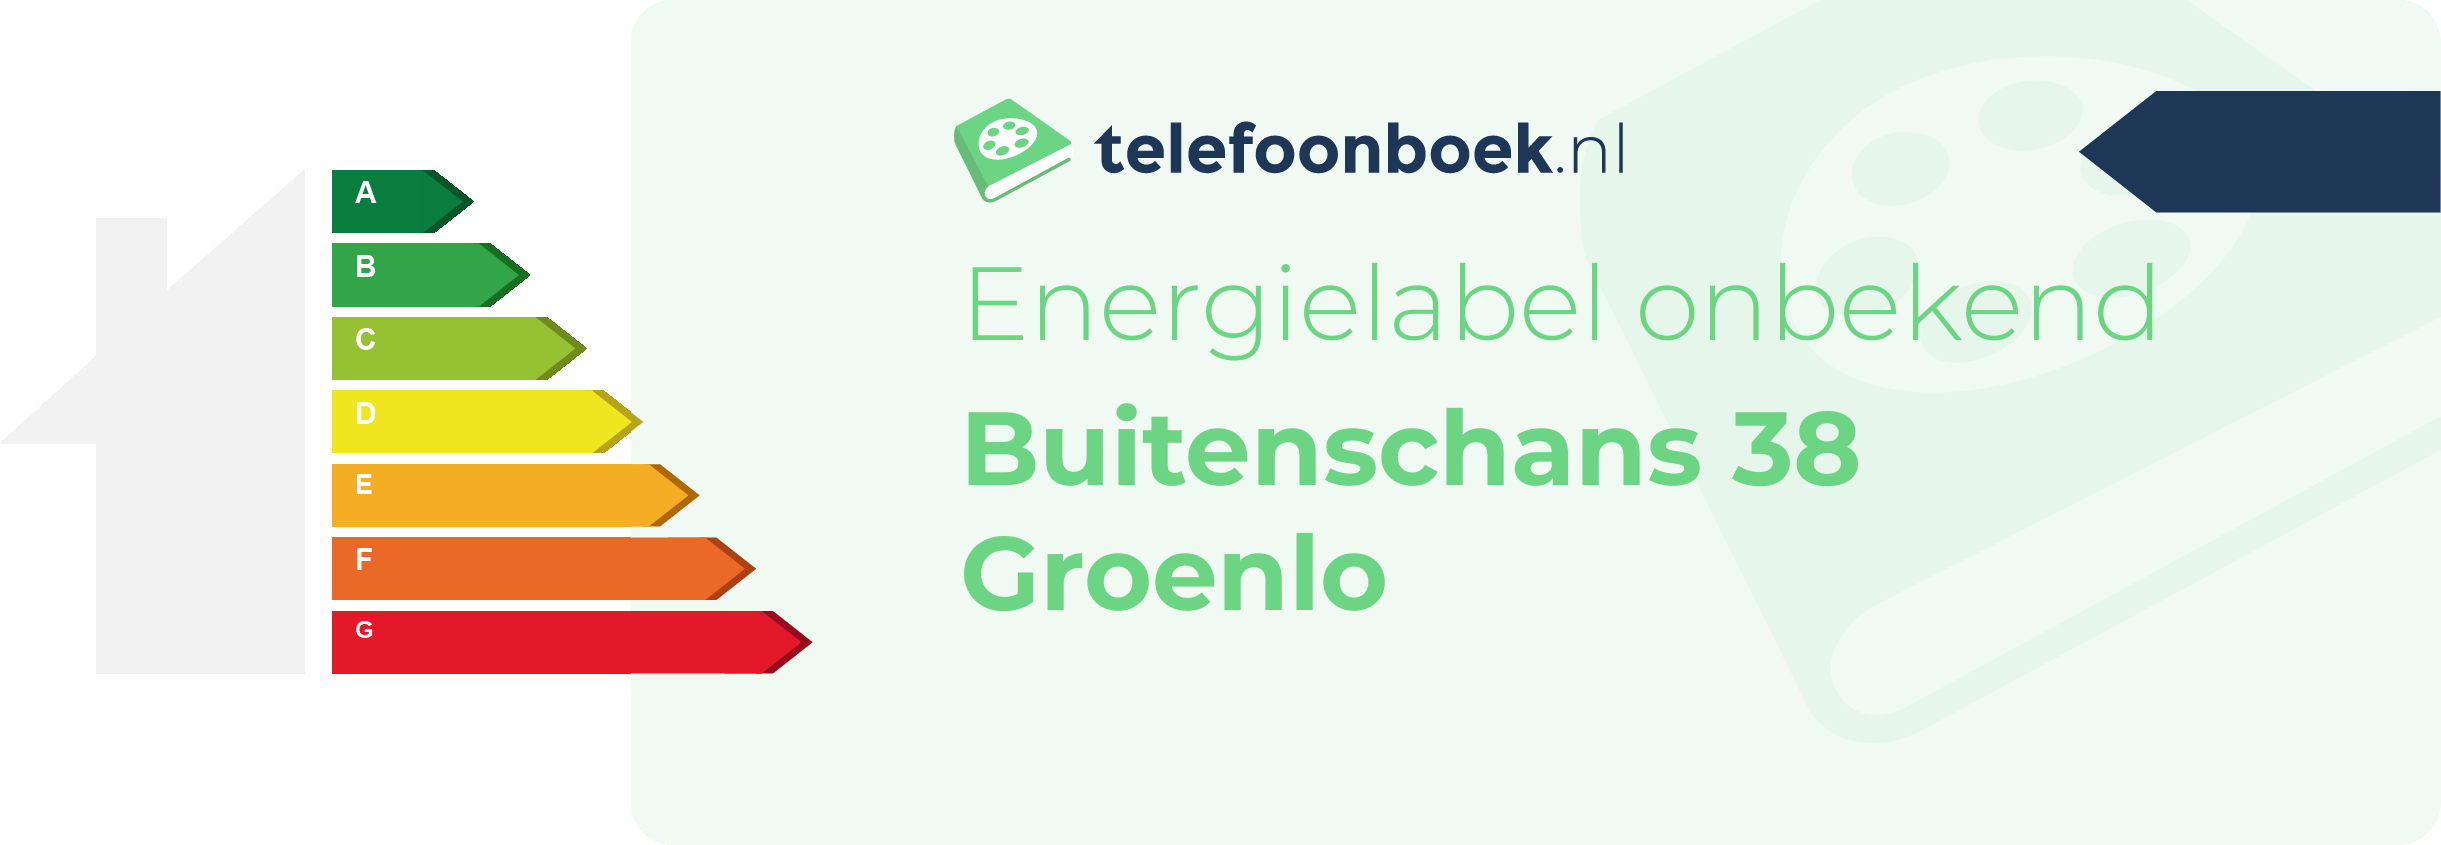 Energielabel Buitenschans 38 Groenlo